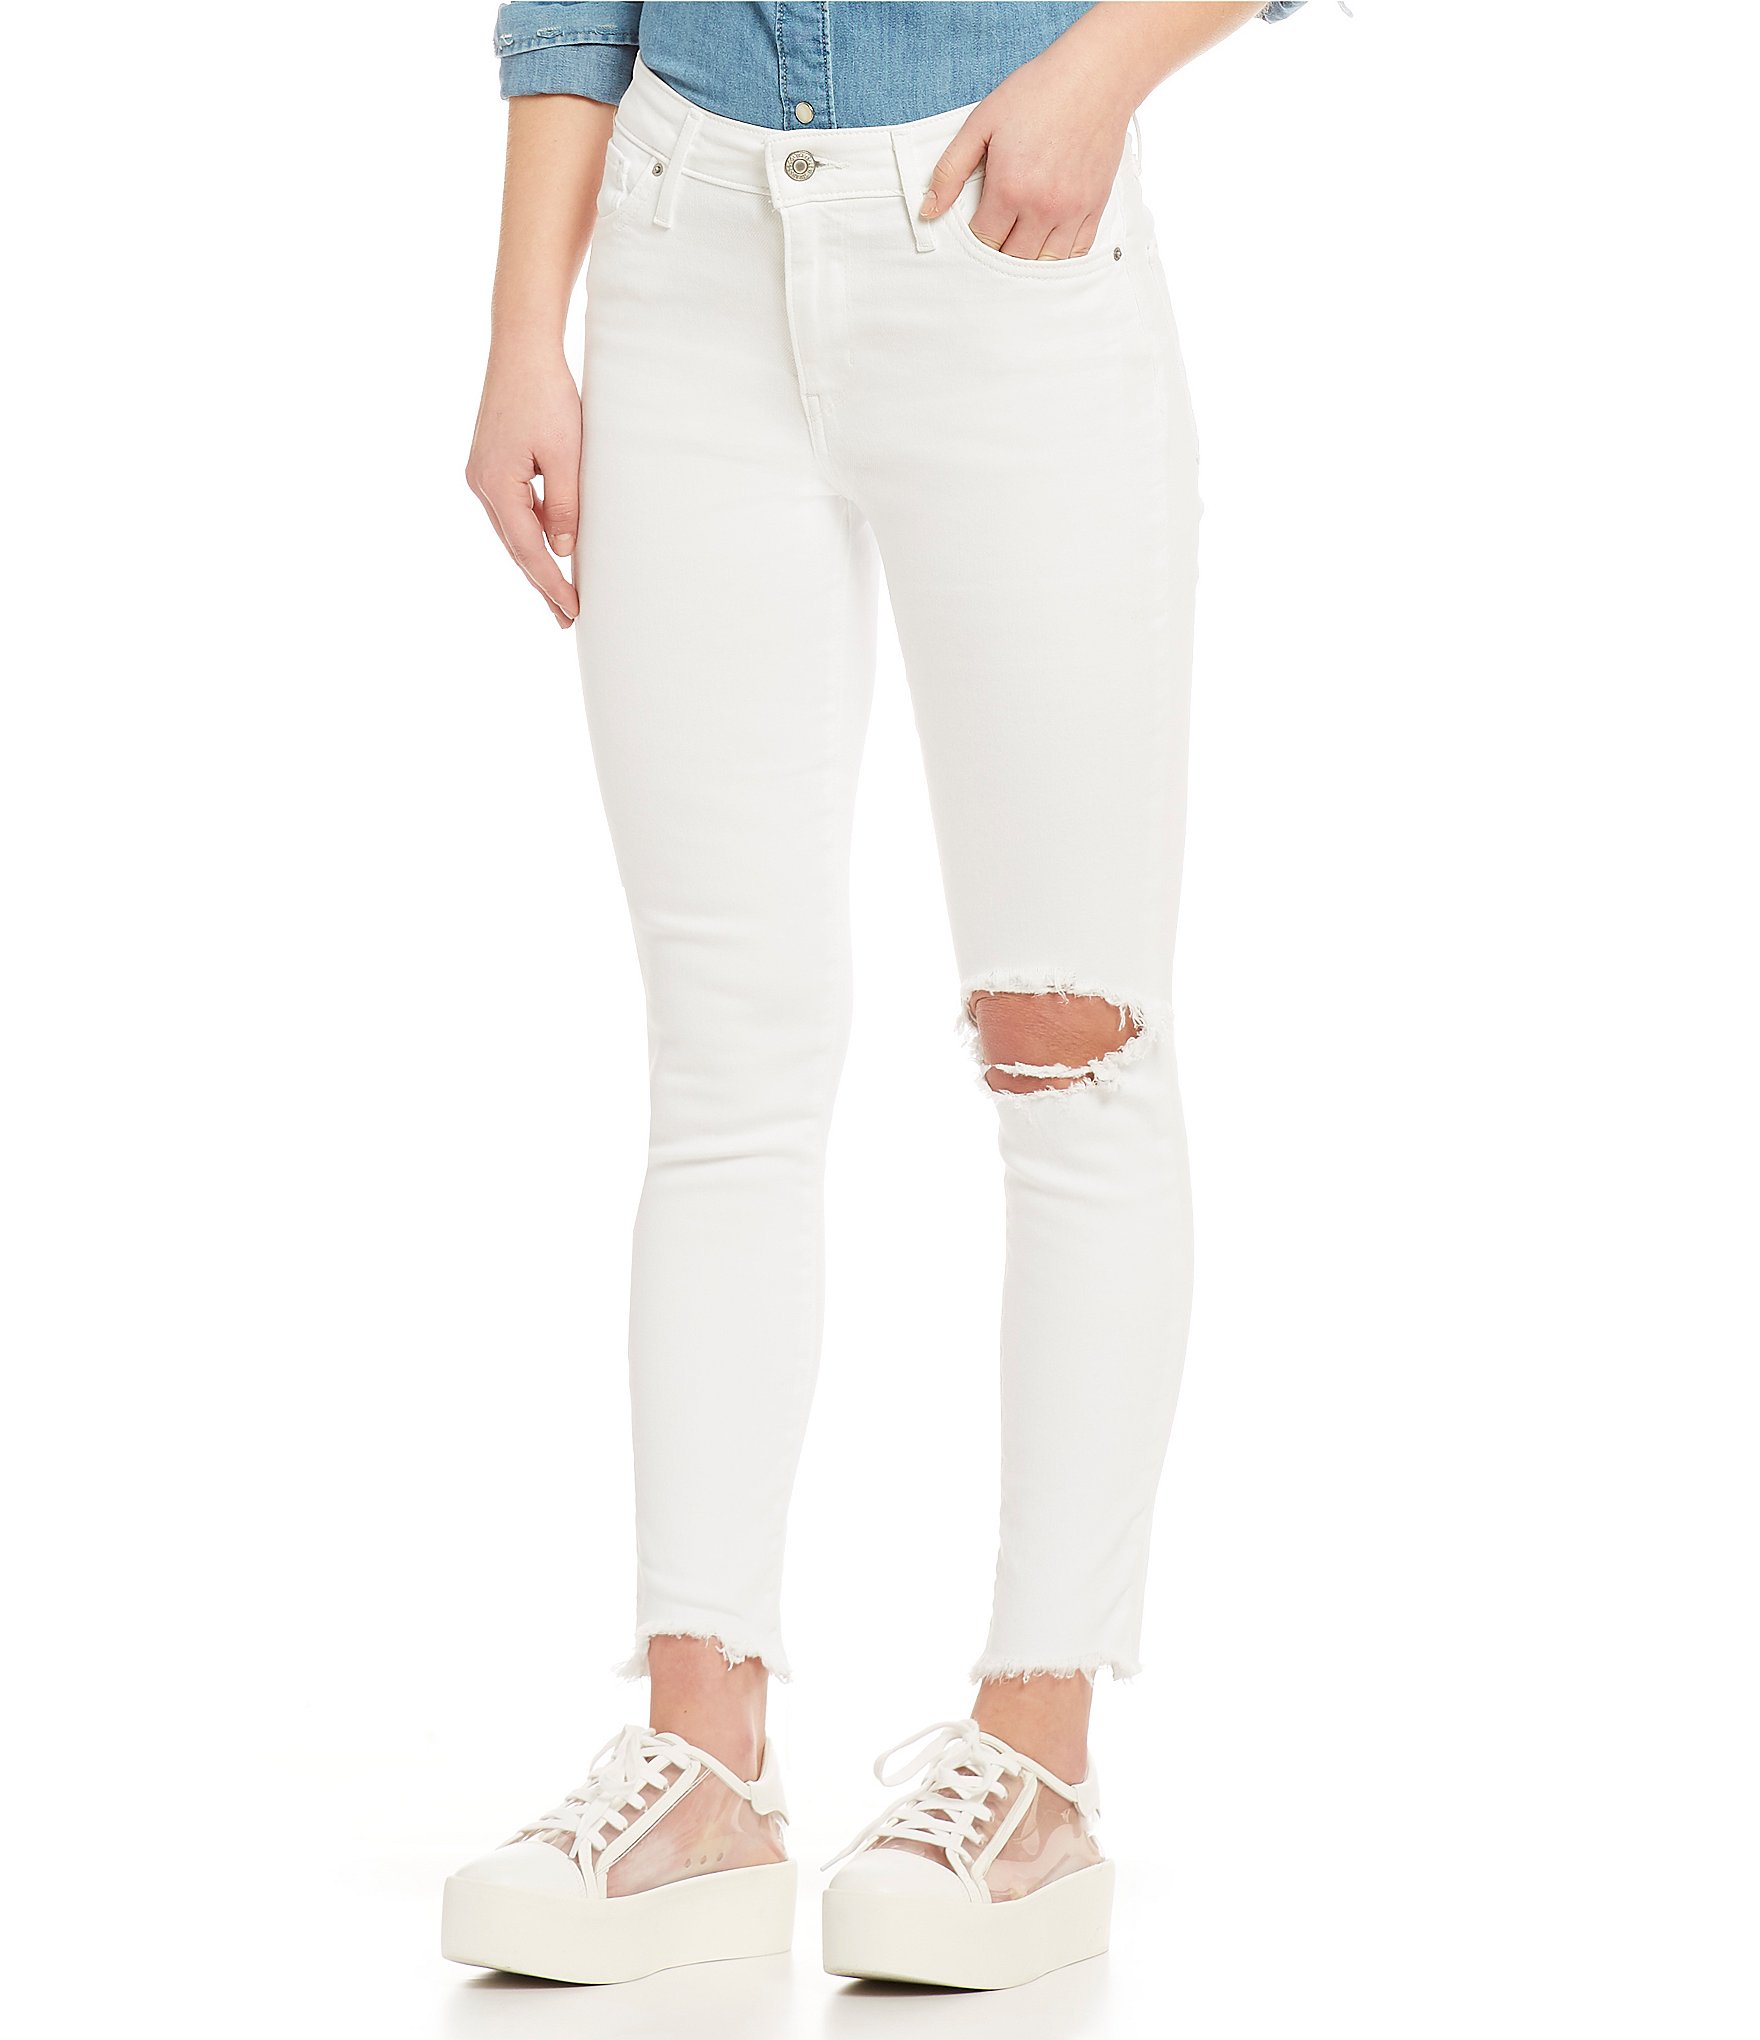 Arriba 70+ imagen levi’s 721 white skinny jeans